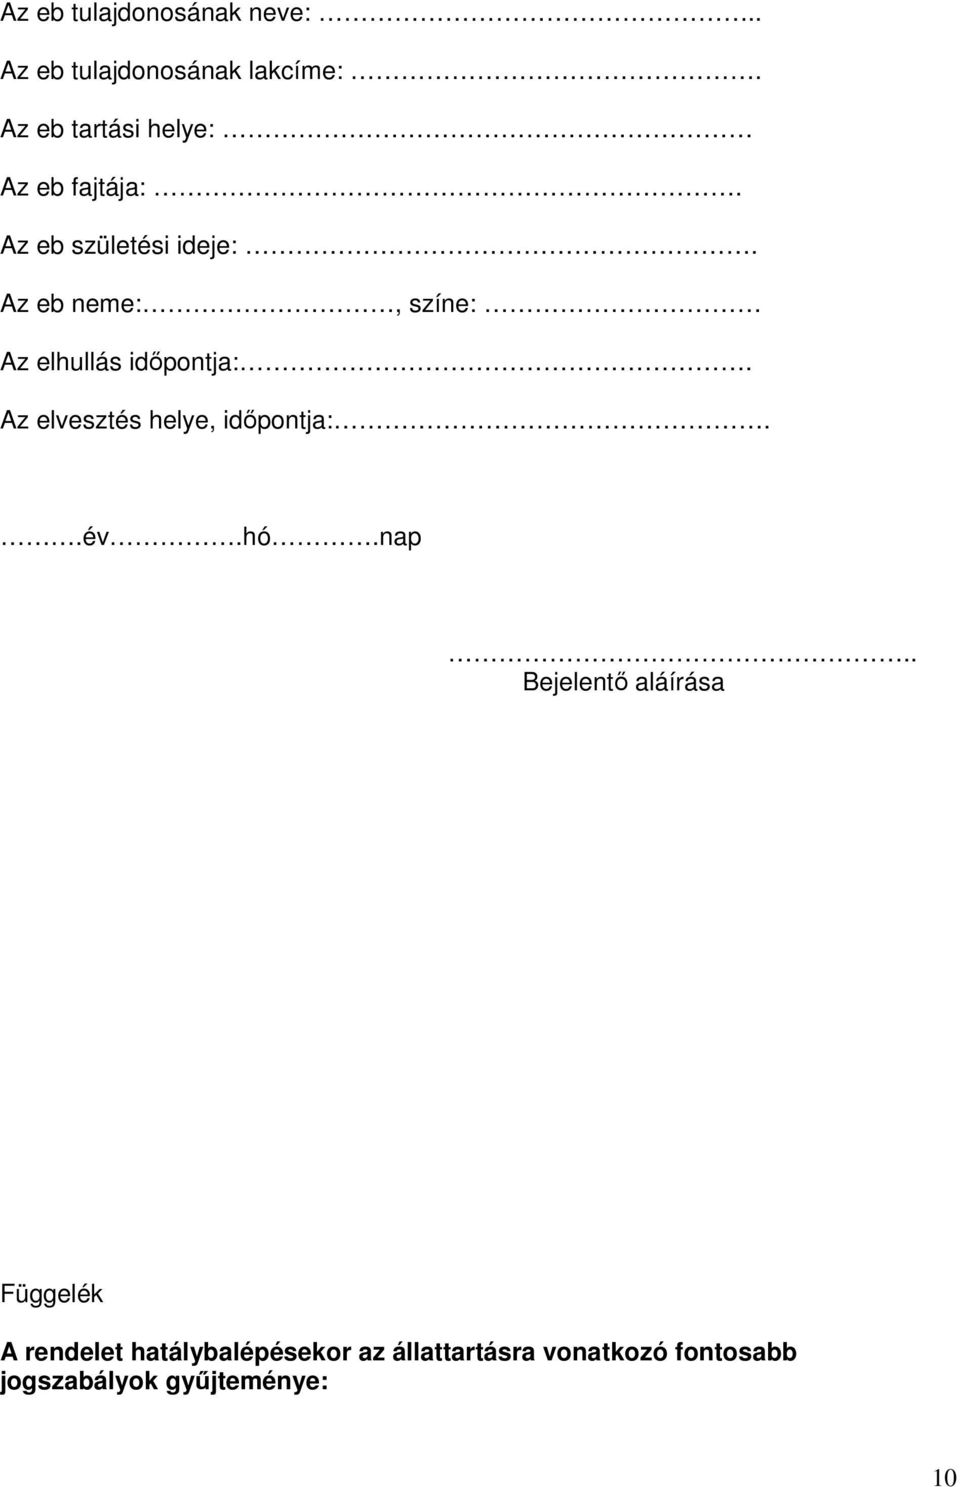 Nagykovácsi Nagyközség Önkormányzat Képviselő-testületének 24/2011. (XI.2.)  rendelete az állattartásról - PDF Ingyenes letöltés